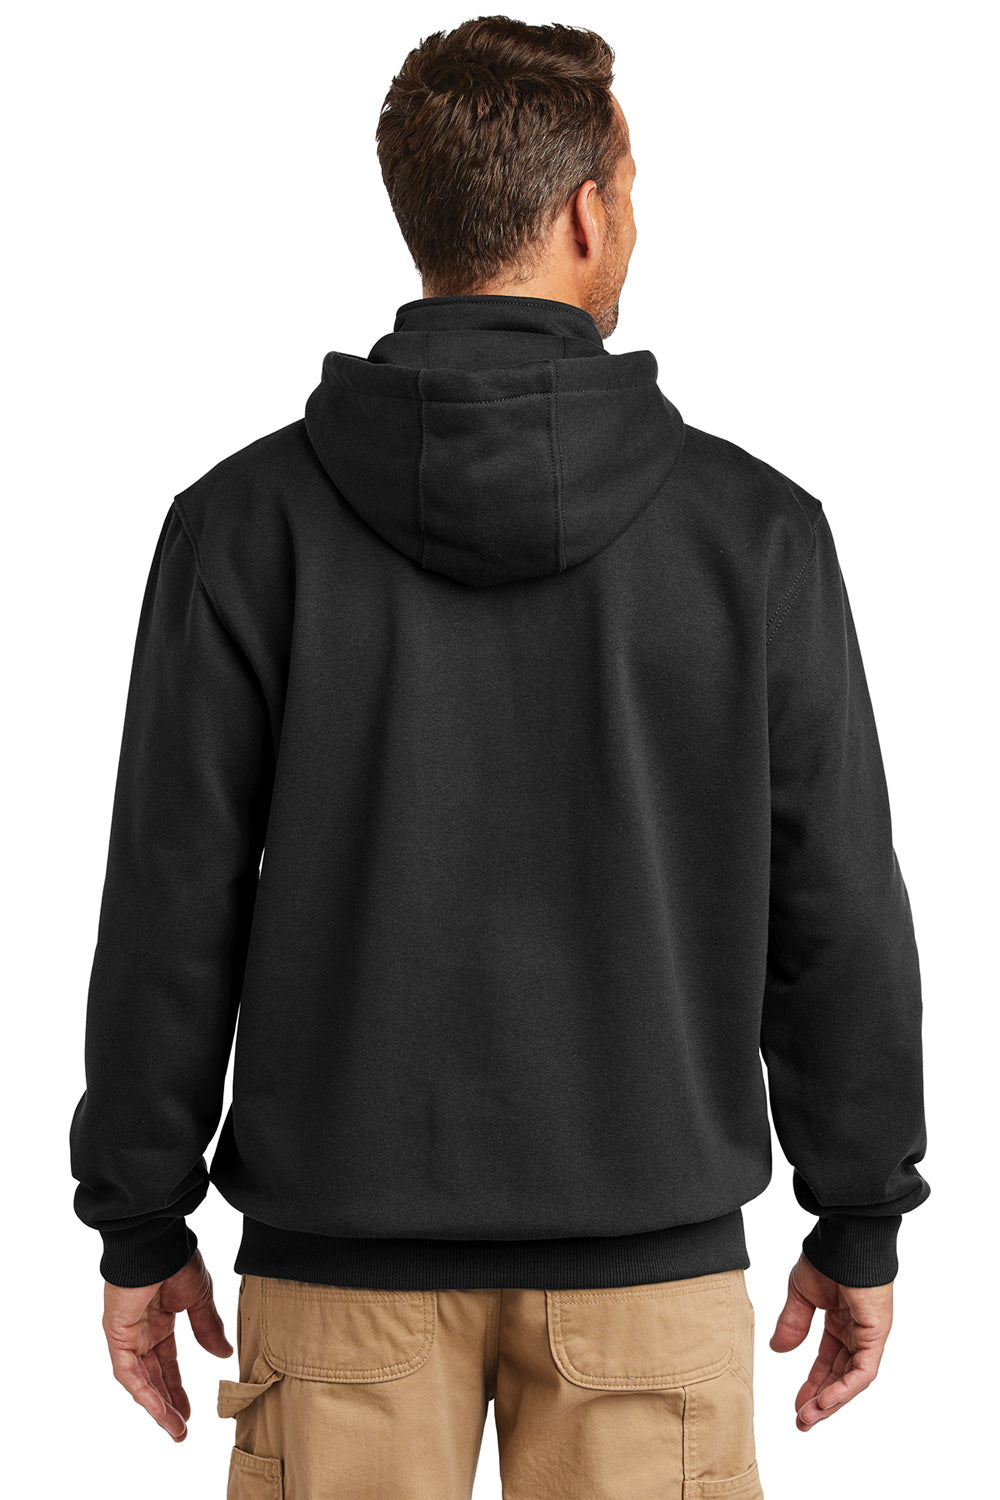 Carhartt CT100617 Mens Paxton Rain Defender Water Resistant 1/4 Zip Hooded Sweatshirt Hoodie Black Model Back